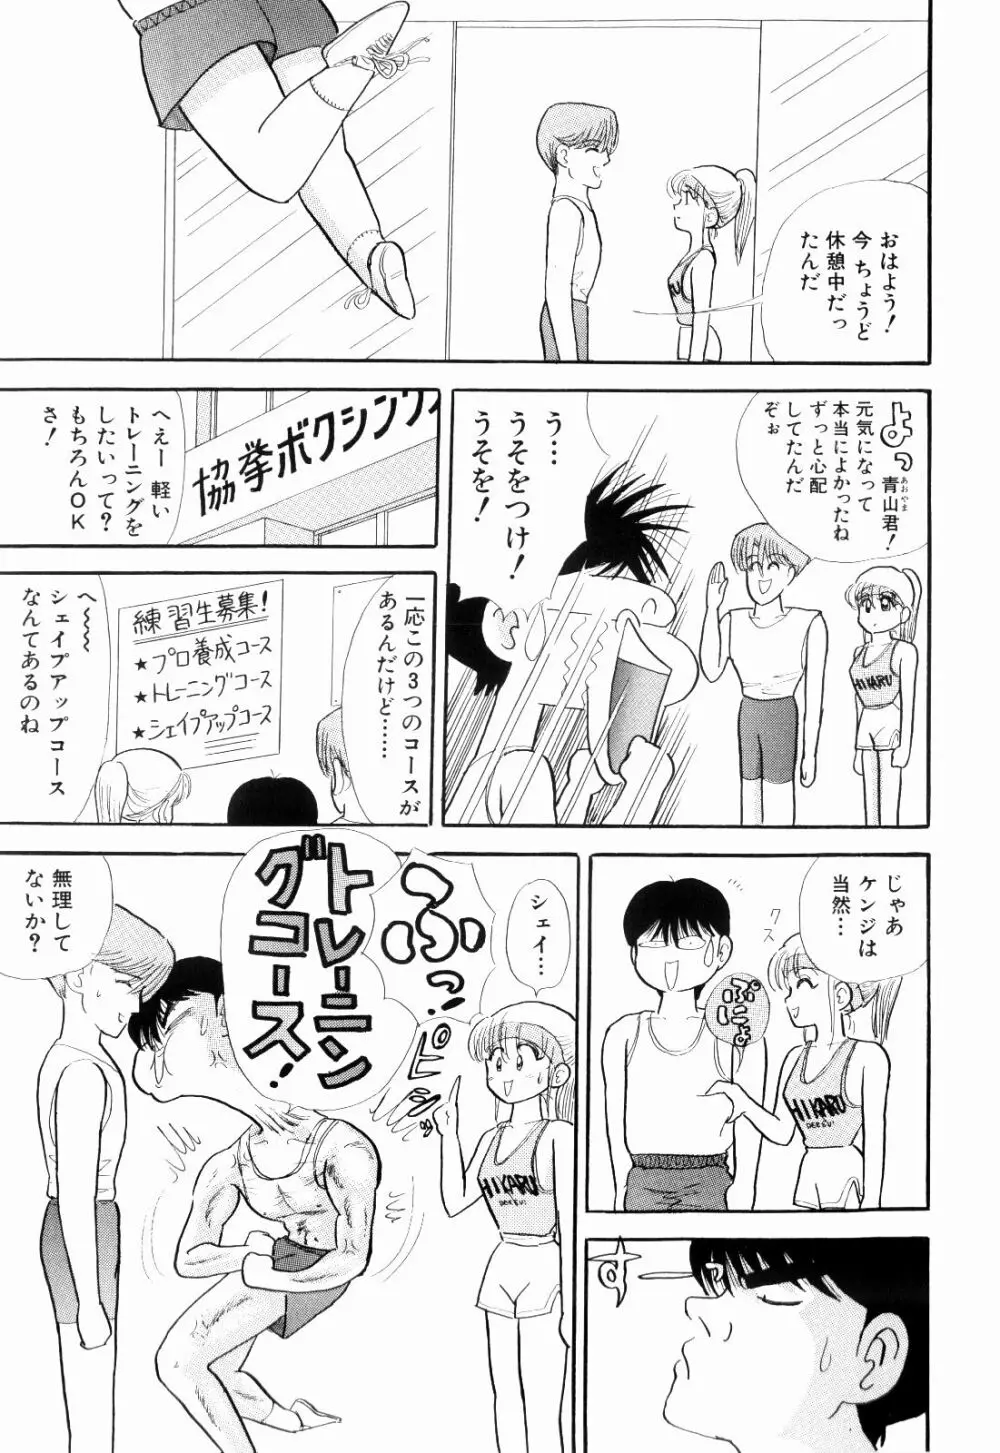 Kenjiro Kakimoto – Futari Kurashi 04 15ページ